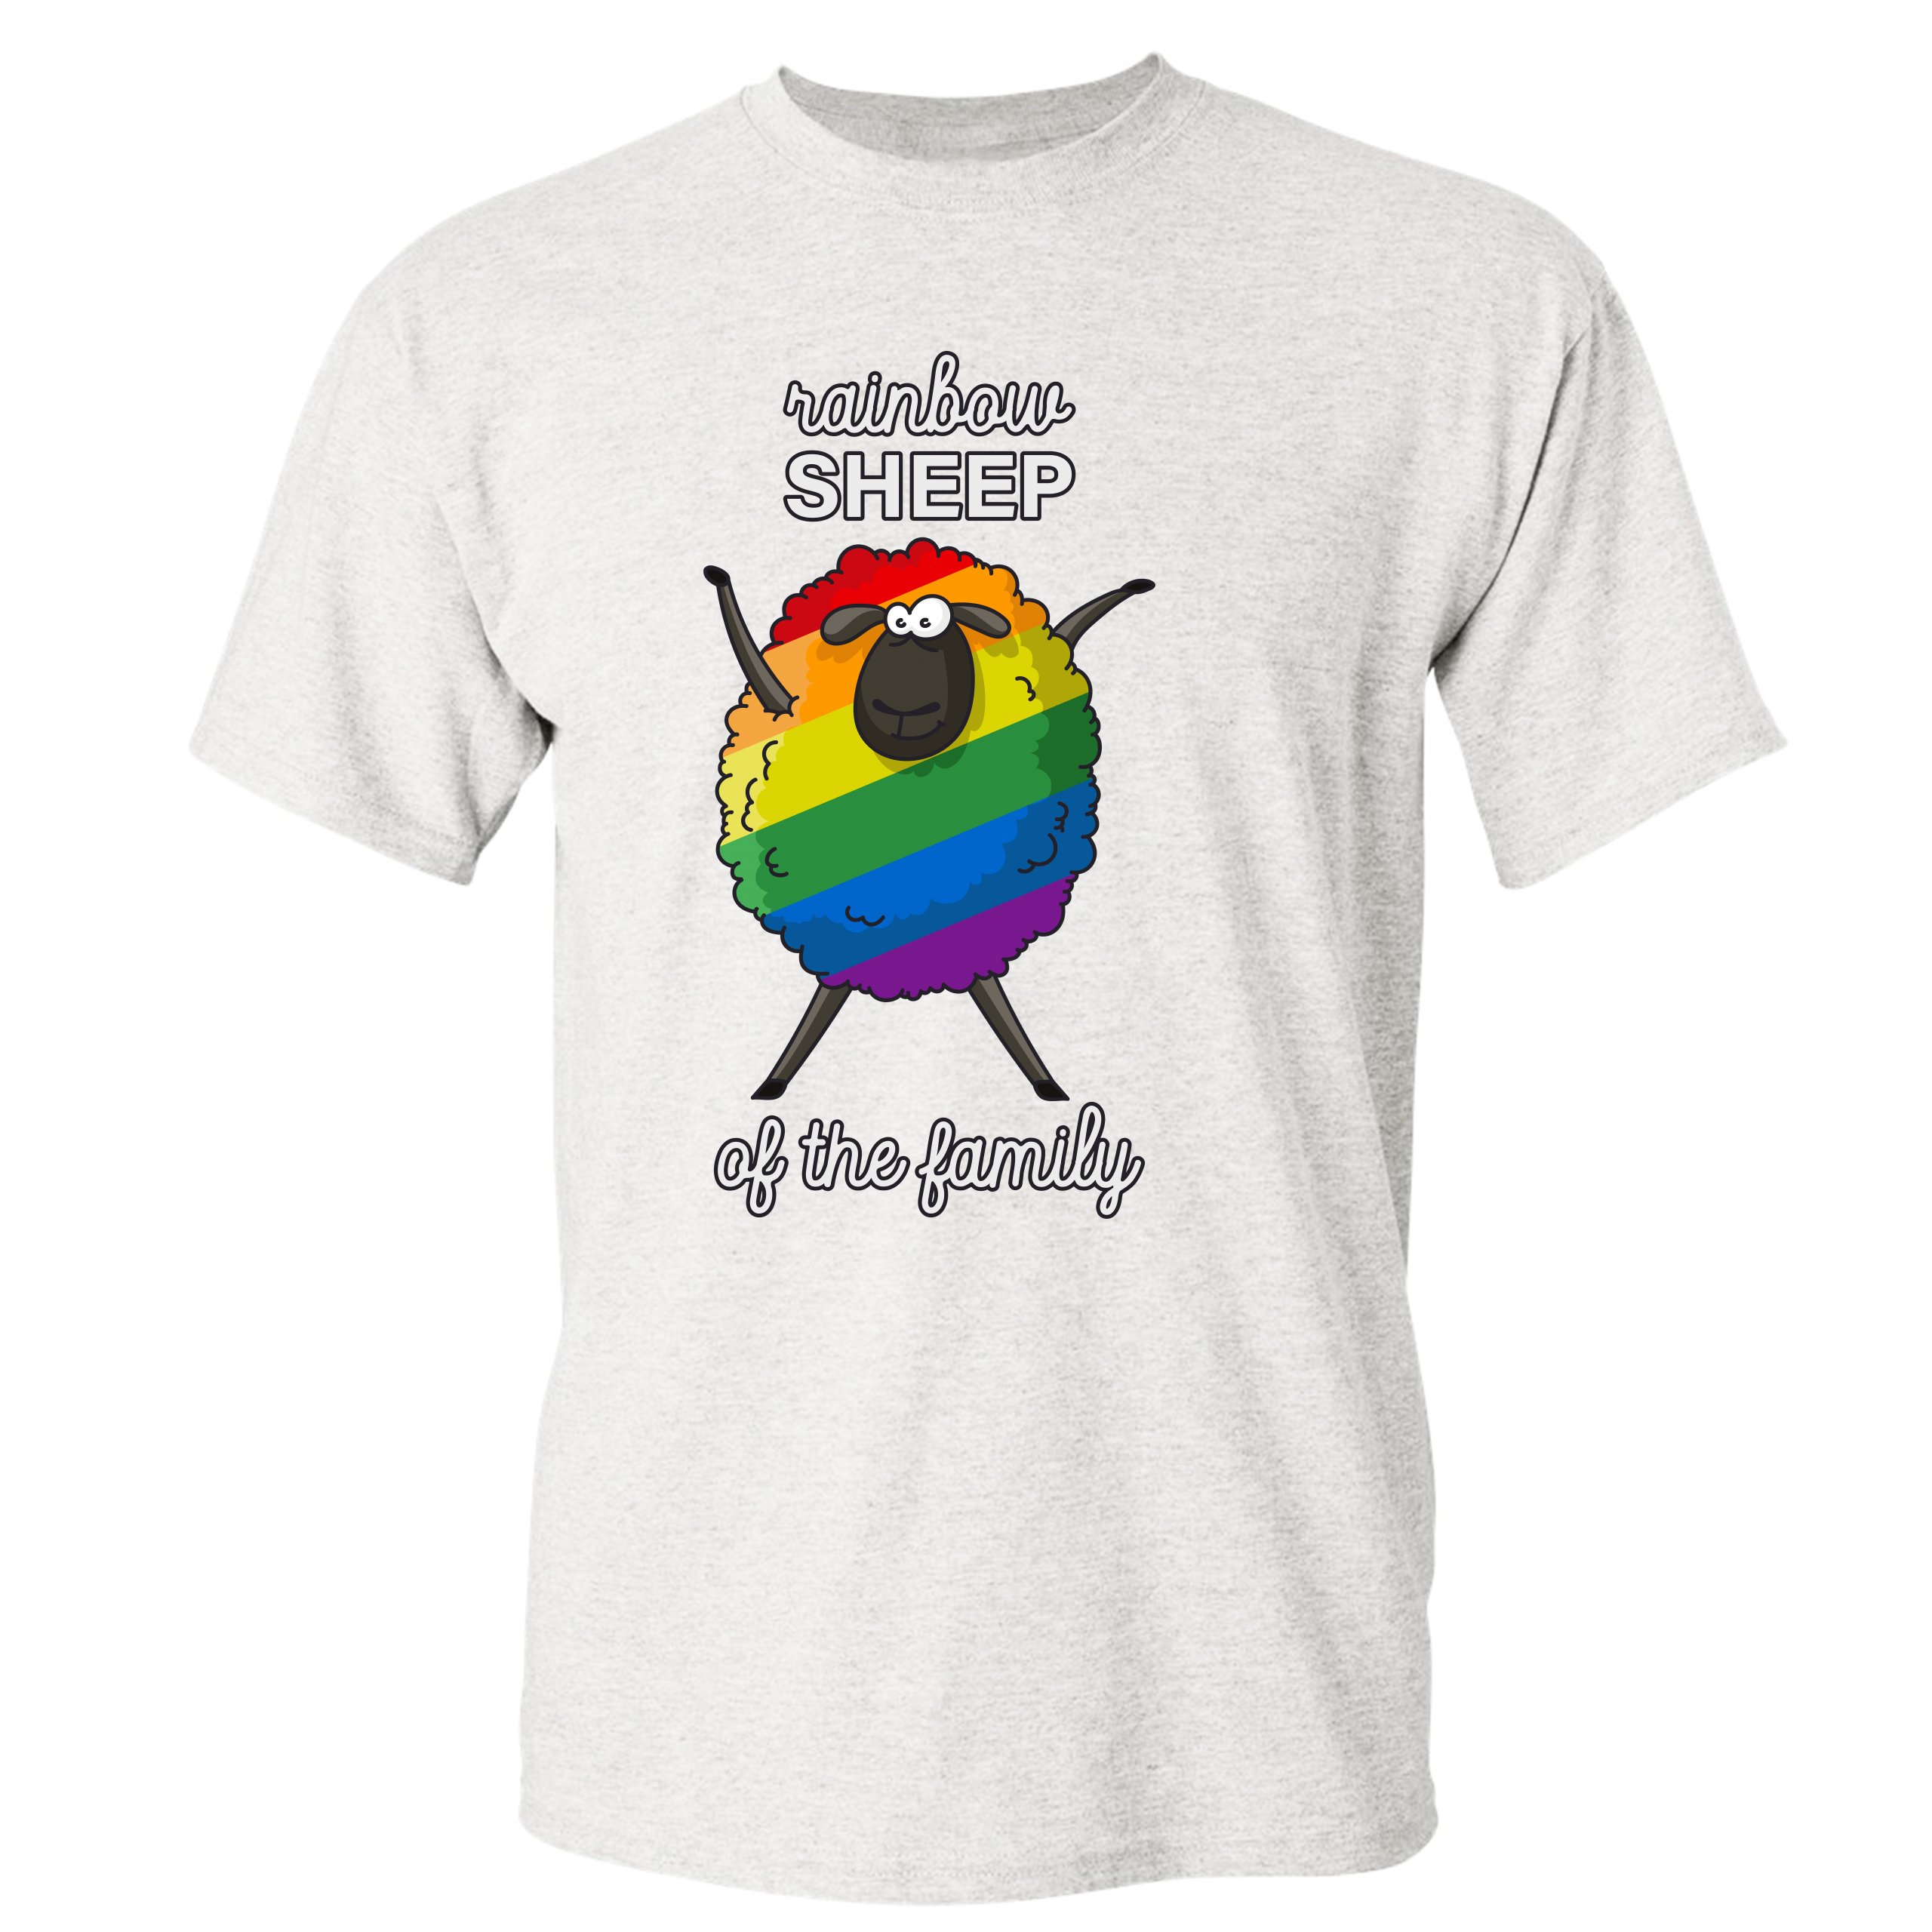 Rainbow Sheep T-Shirt Gay Pride T-Shirt Pride Festival T-Shirt LGBTQ T-Shirt Equality T-Shirt Pride T-Shirt